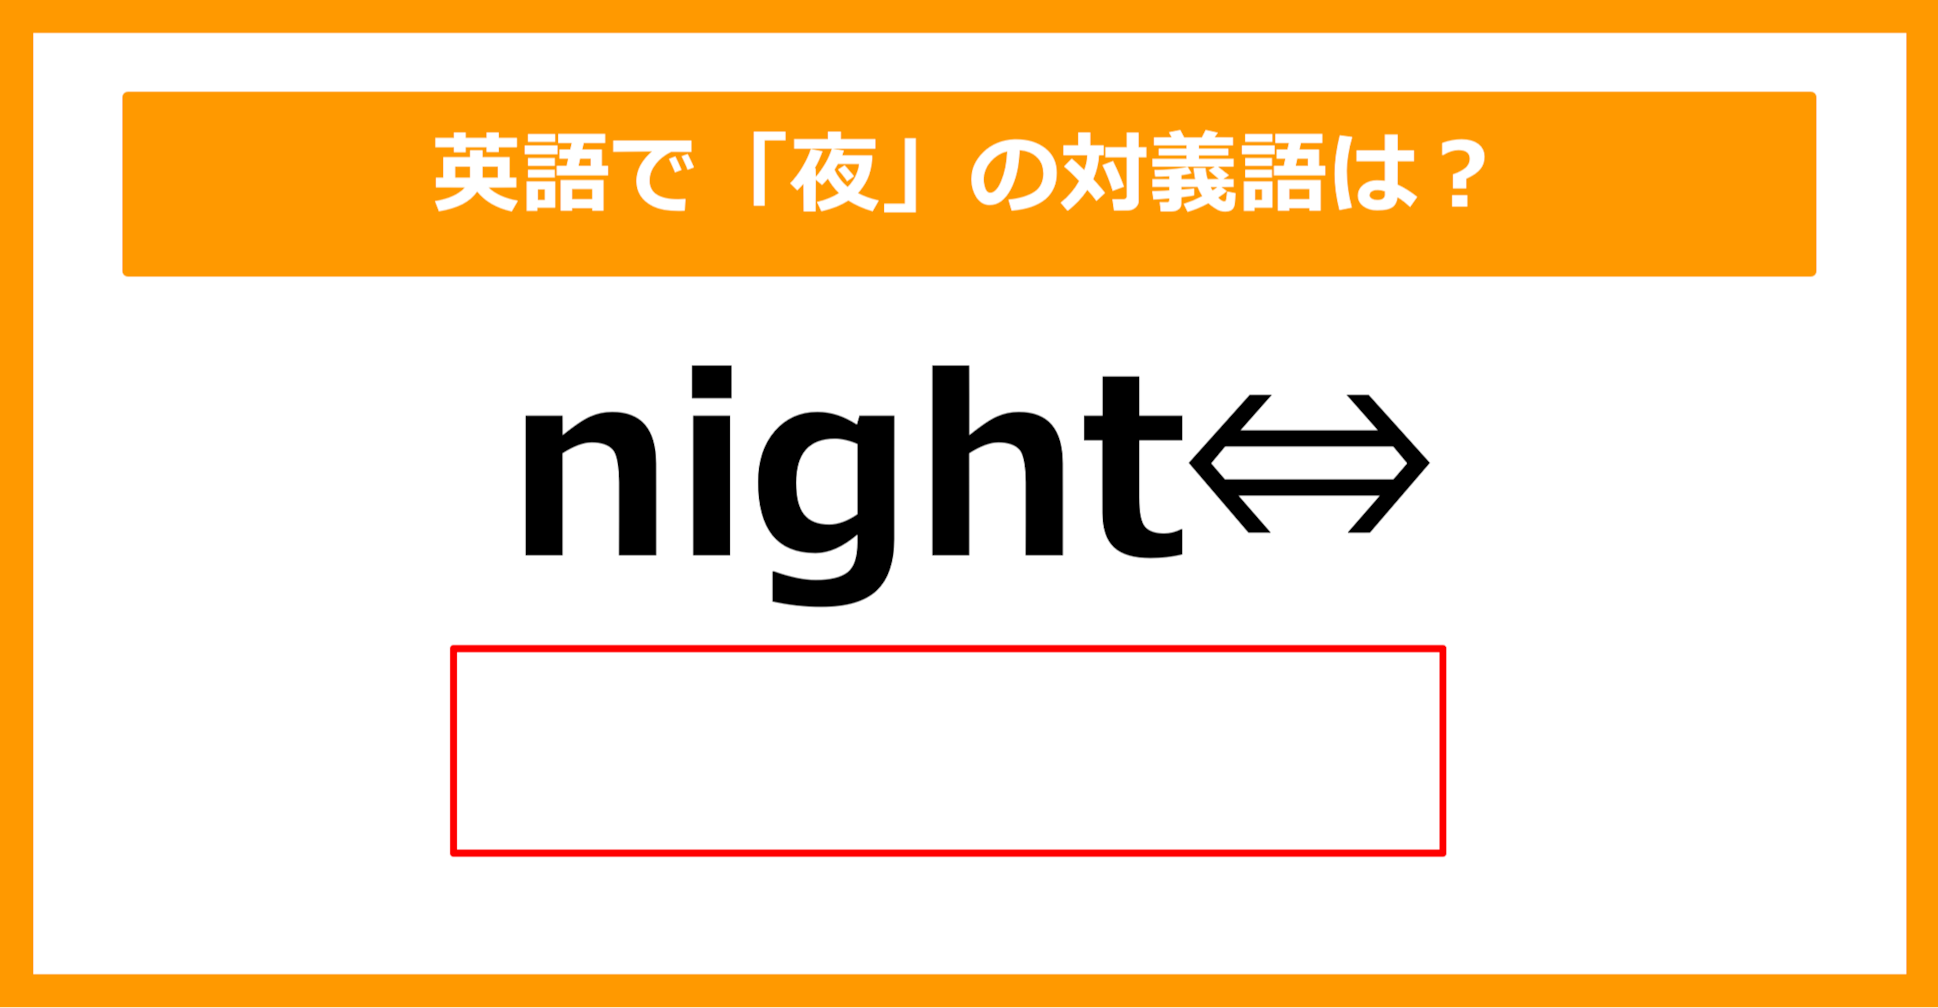 【対義語クイズ】「night（夜）」の対義語は何でしょう？（第199問）